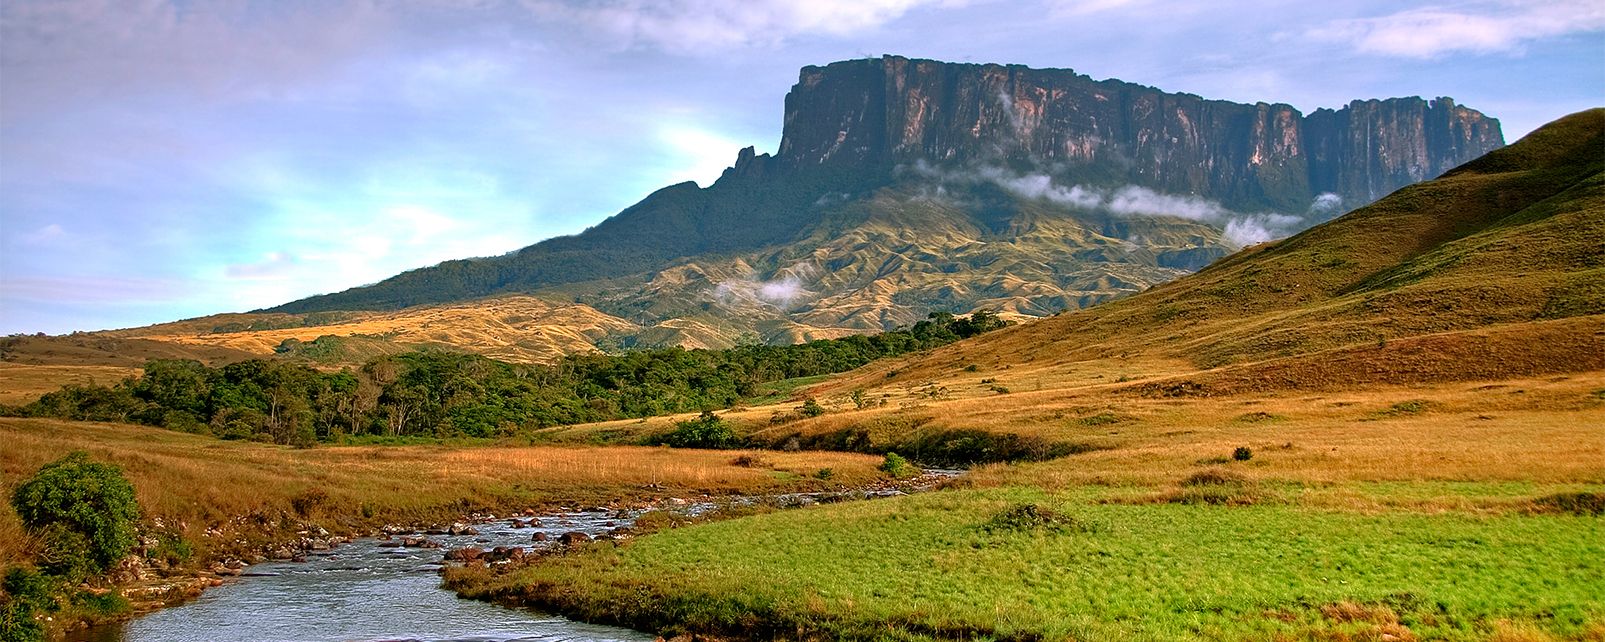 venezuela paysage - Image